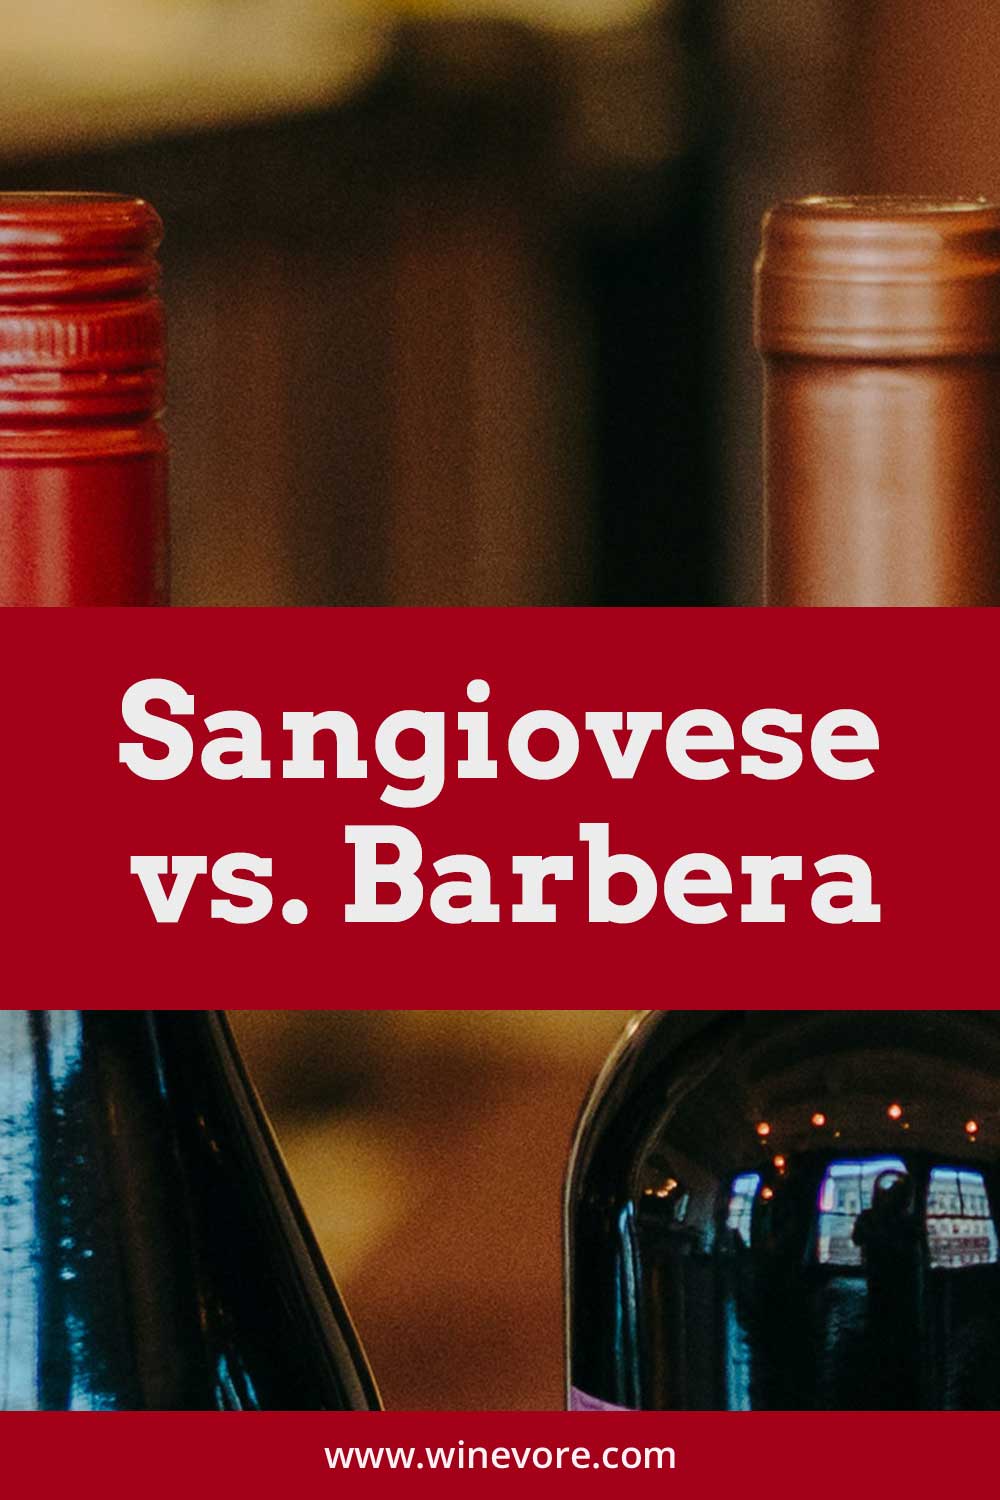 2 sealed wine bottles together - Sangiovese vs. Barbera.